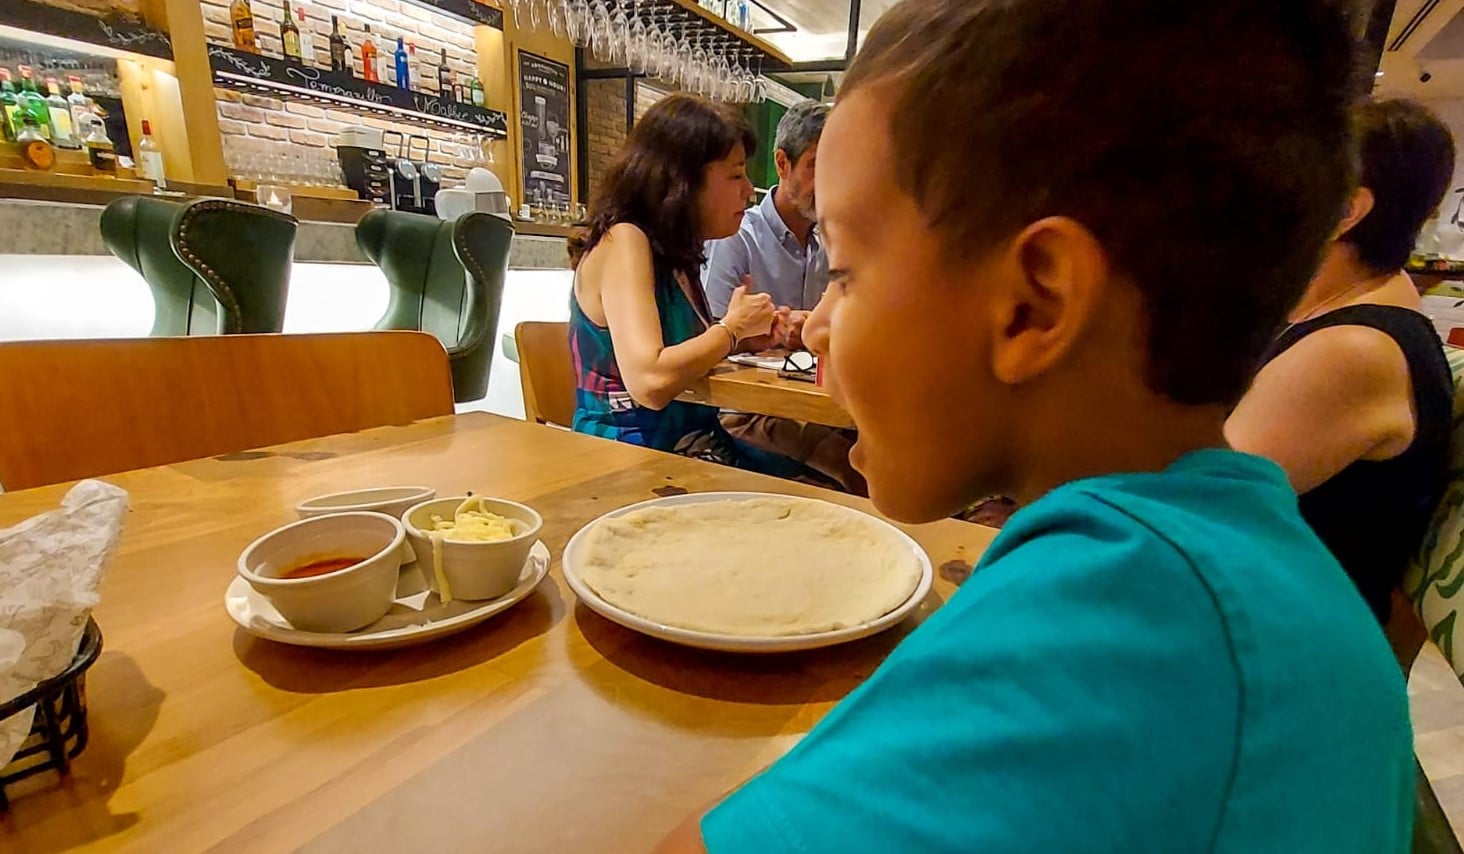 Norte Shopping ganha praça de alimentação infantil - Diário do Rio de  Janeiro